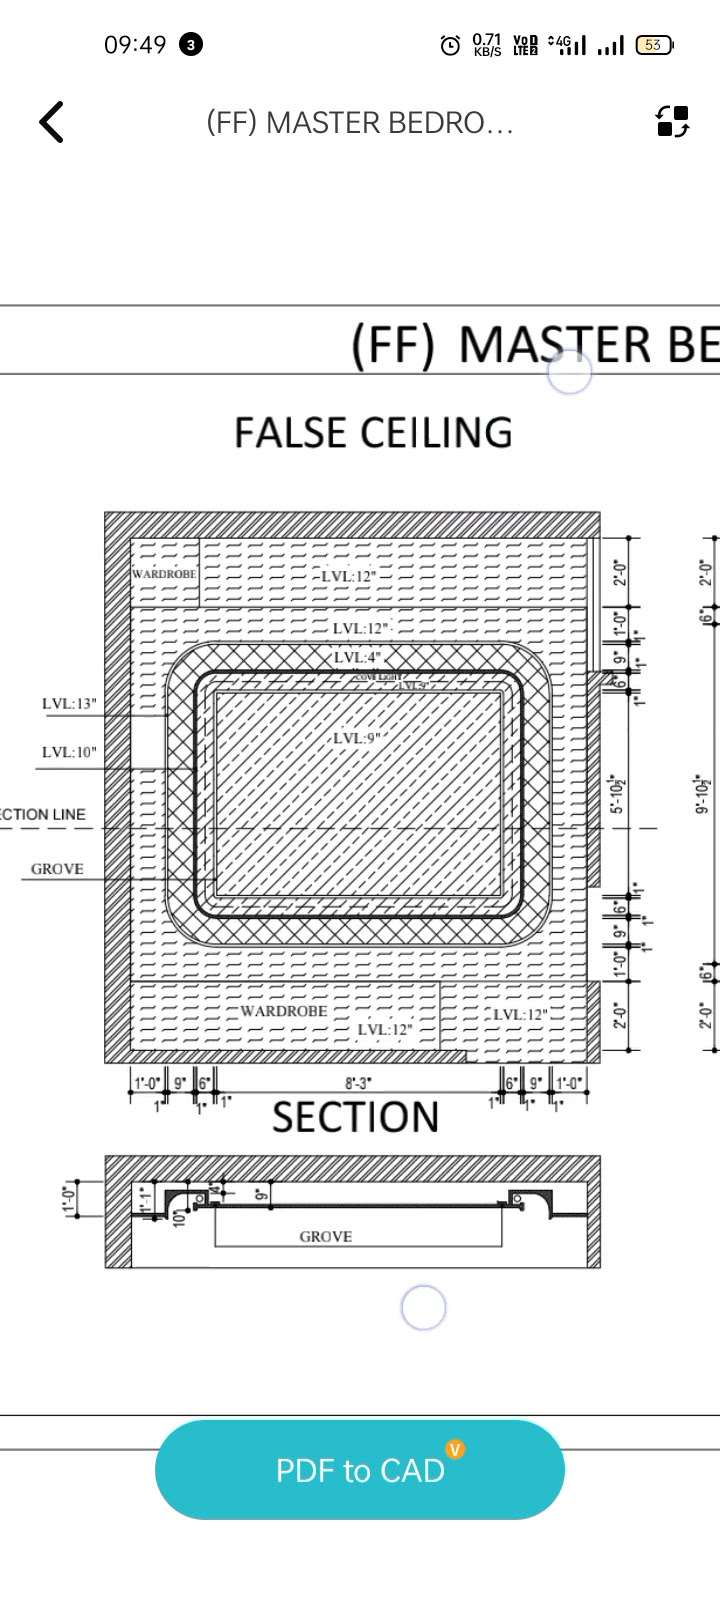 false ceiling plan
#InteriorDesigner 
#7073176249